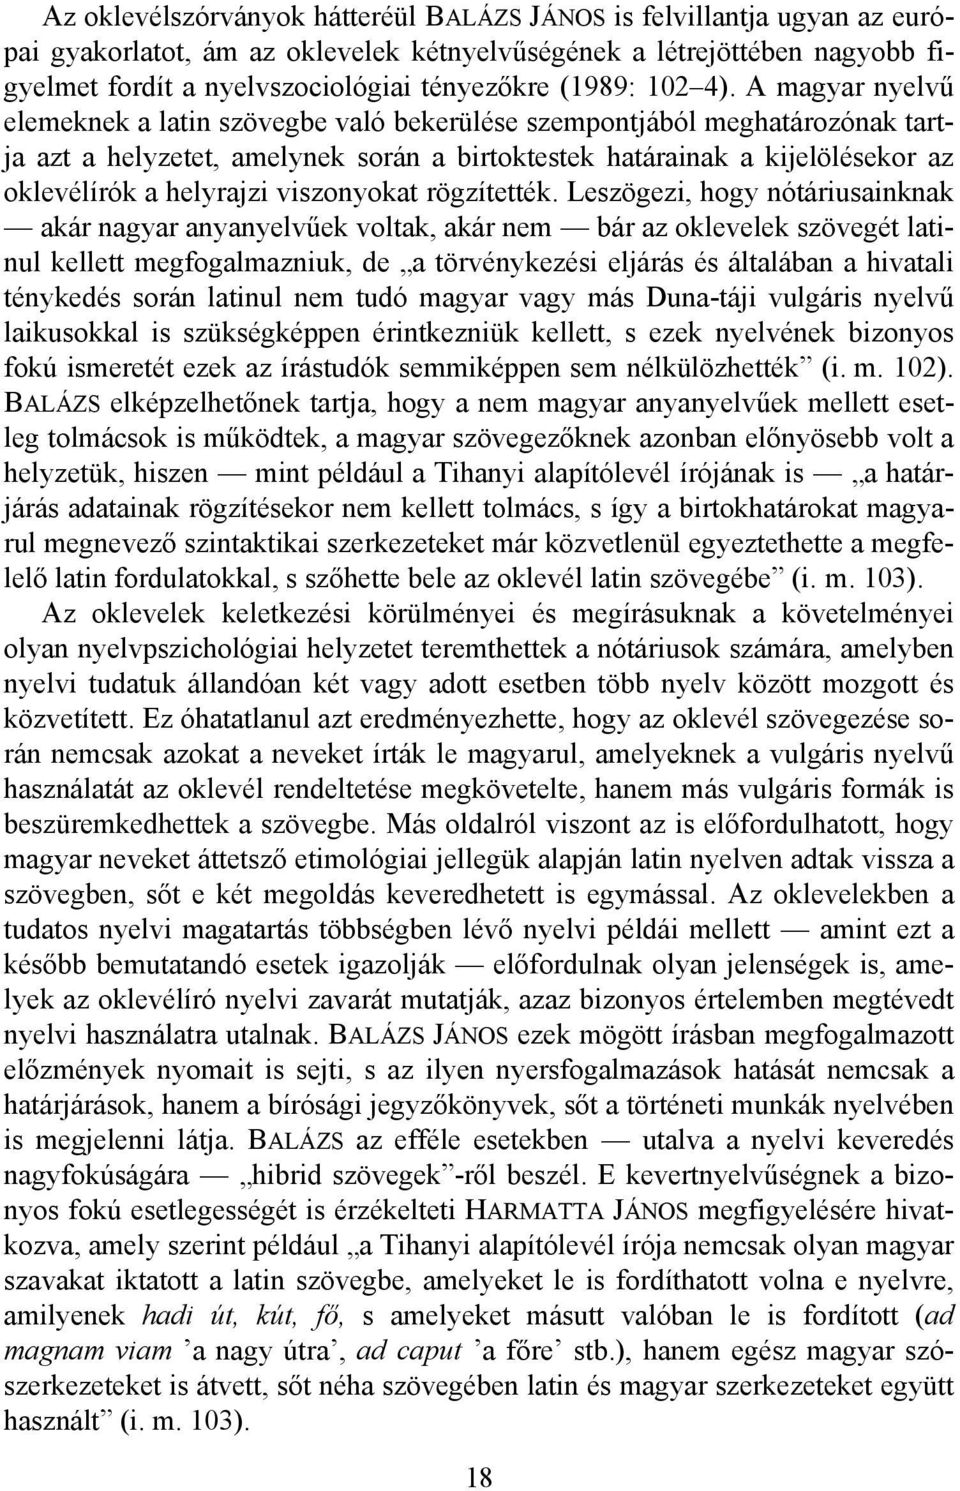 A magyar nyelvű elemeknek a latin szövegbe való bekerülése szempontjából meghatározónak tartja azt a helyzetet, amelynek során a birtoktestek határainak a kijelölésekor az oklevélírók a helyrajzi